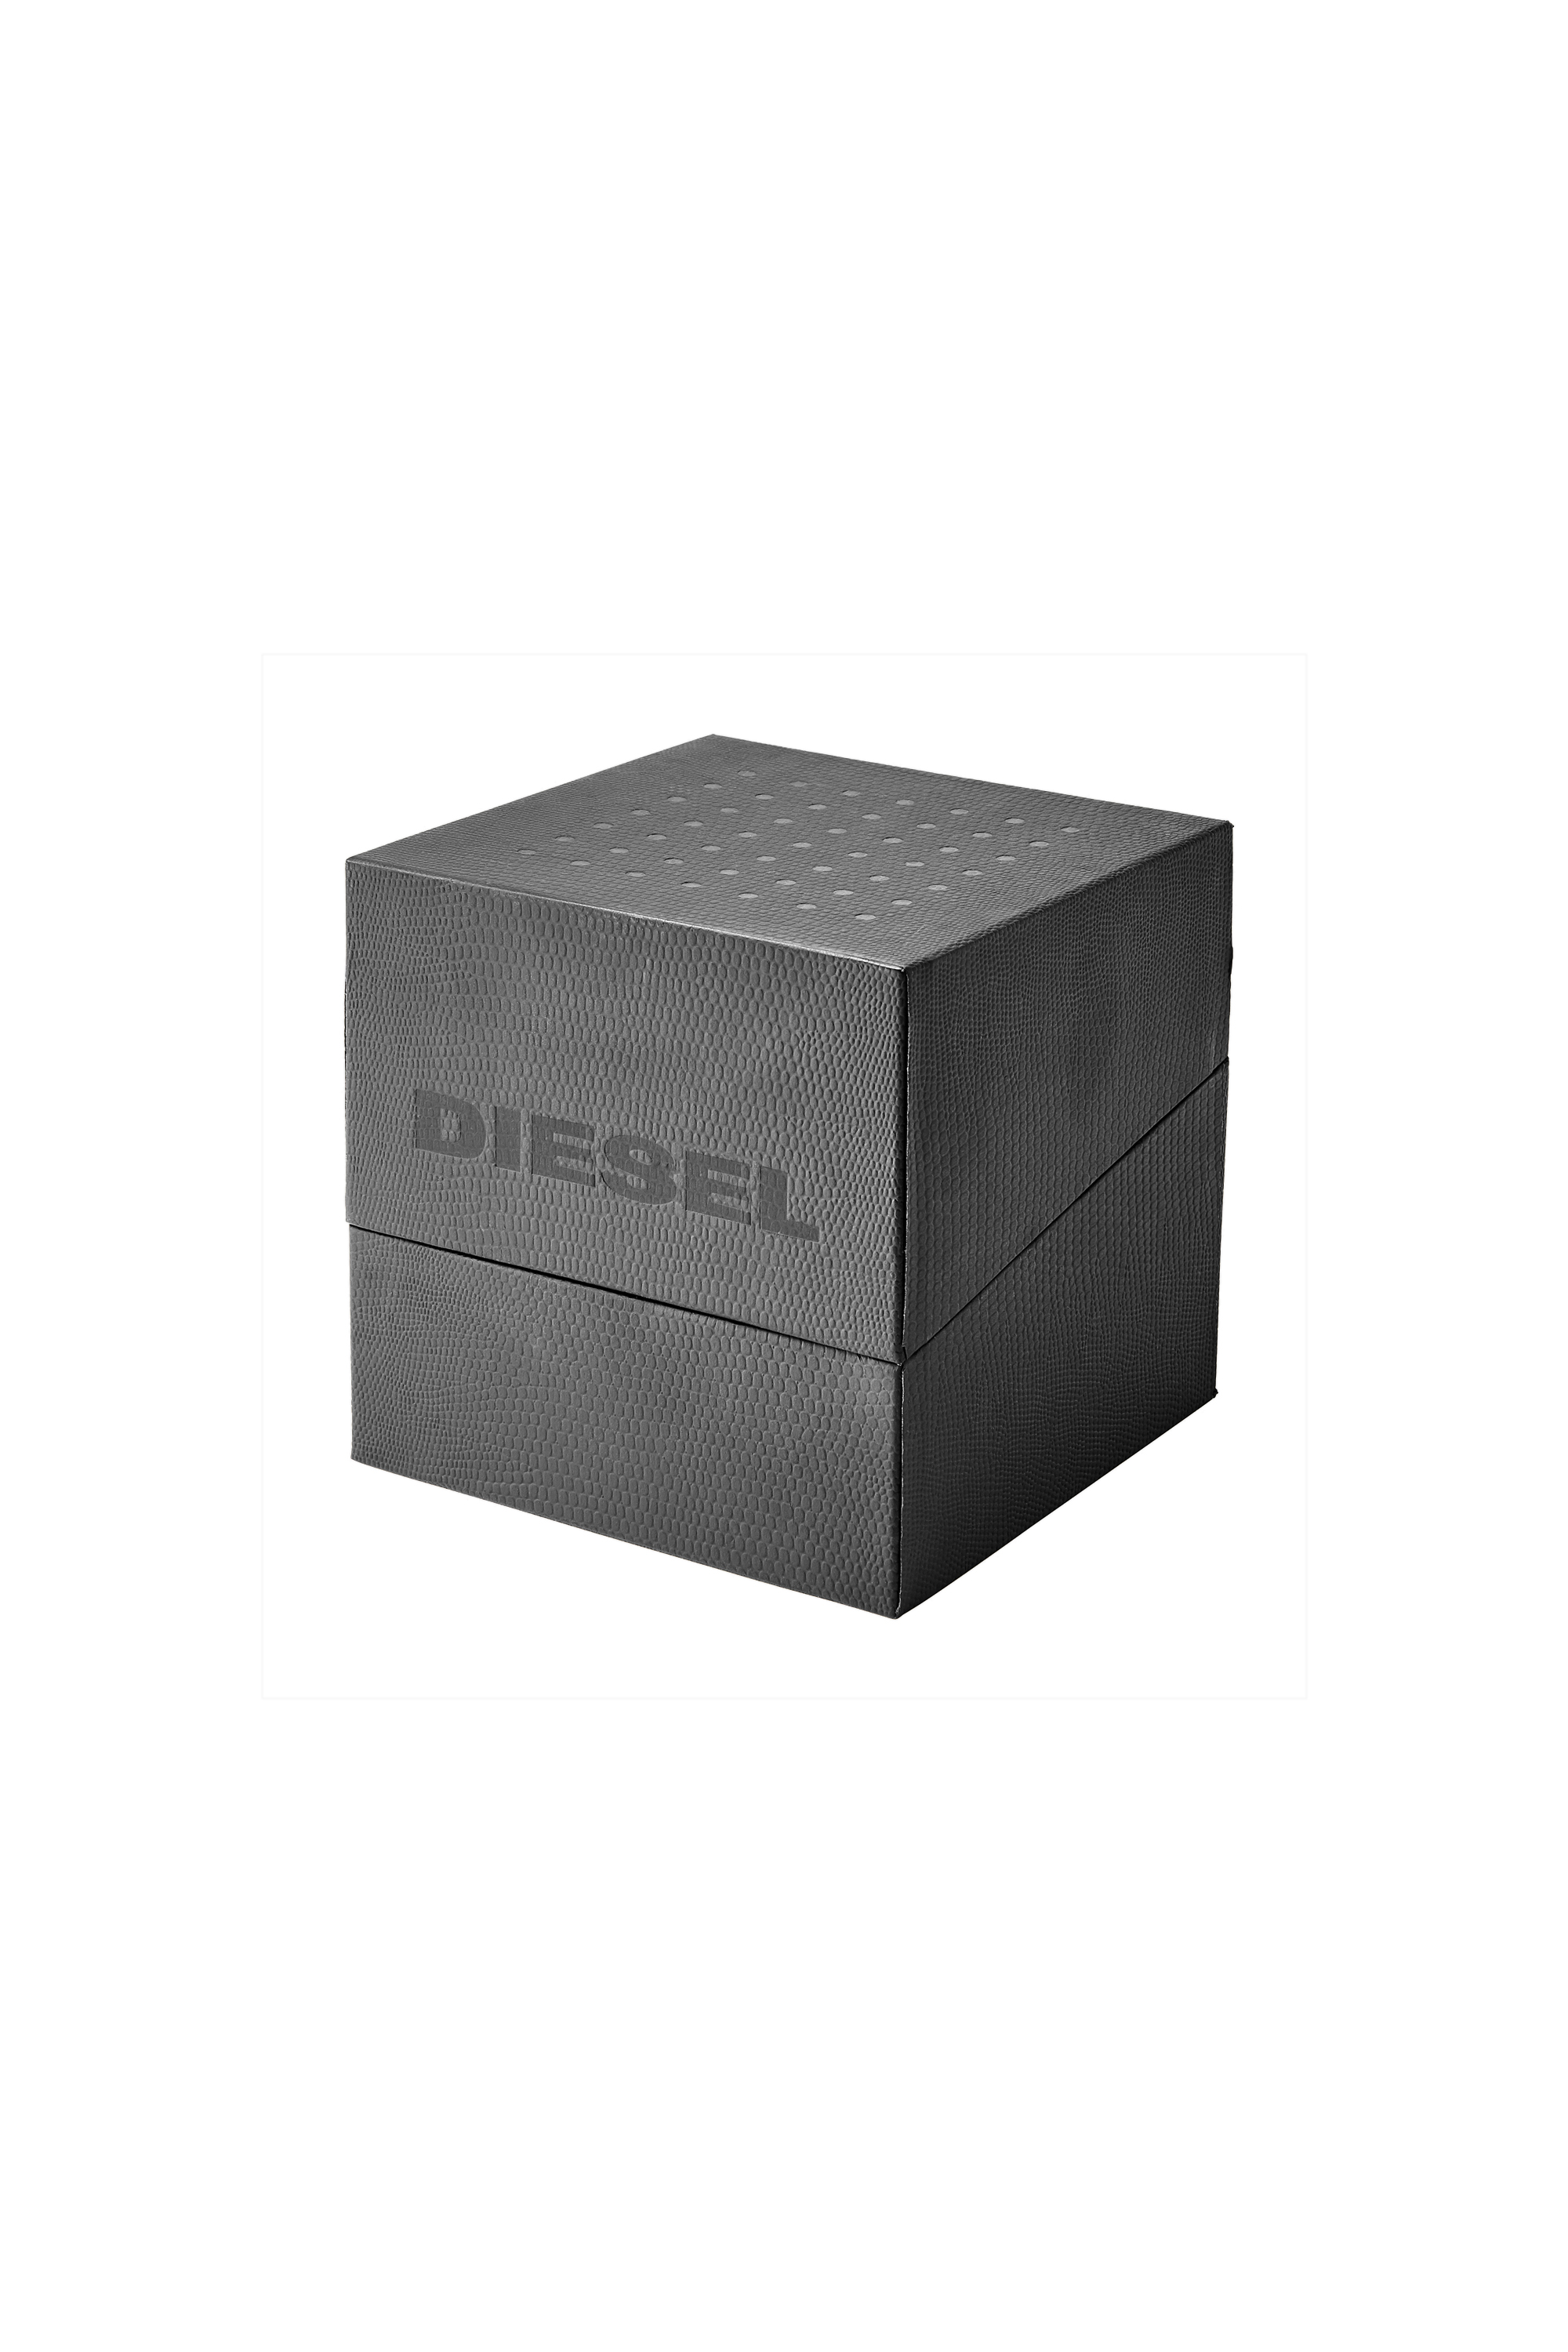 Diesel - DZ7429, Grey - Image 5